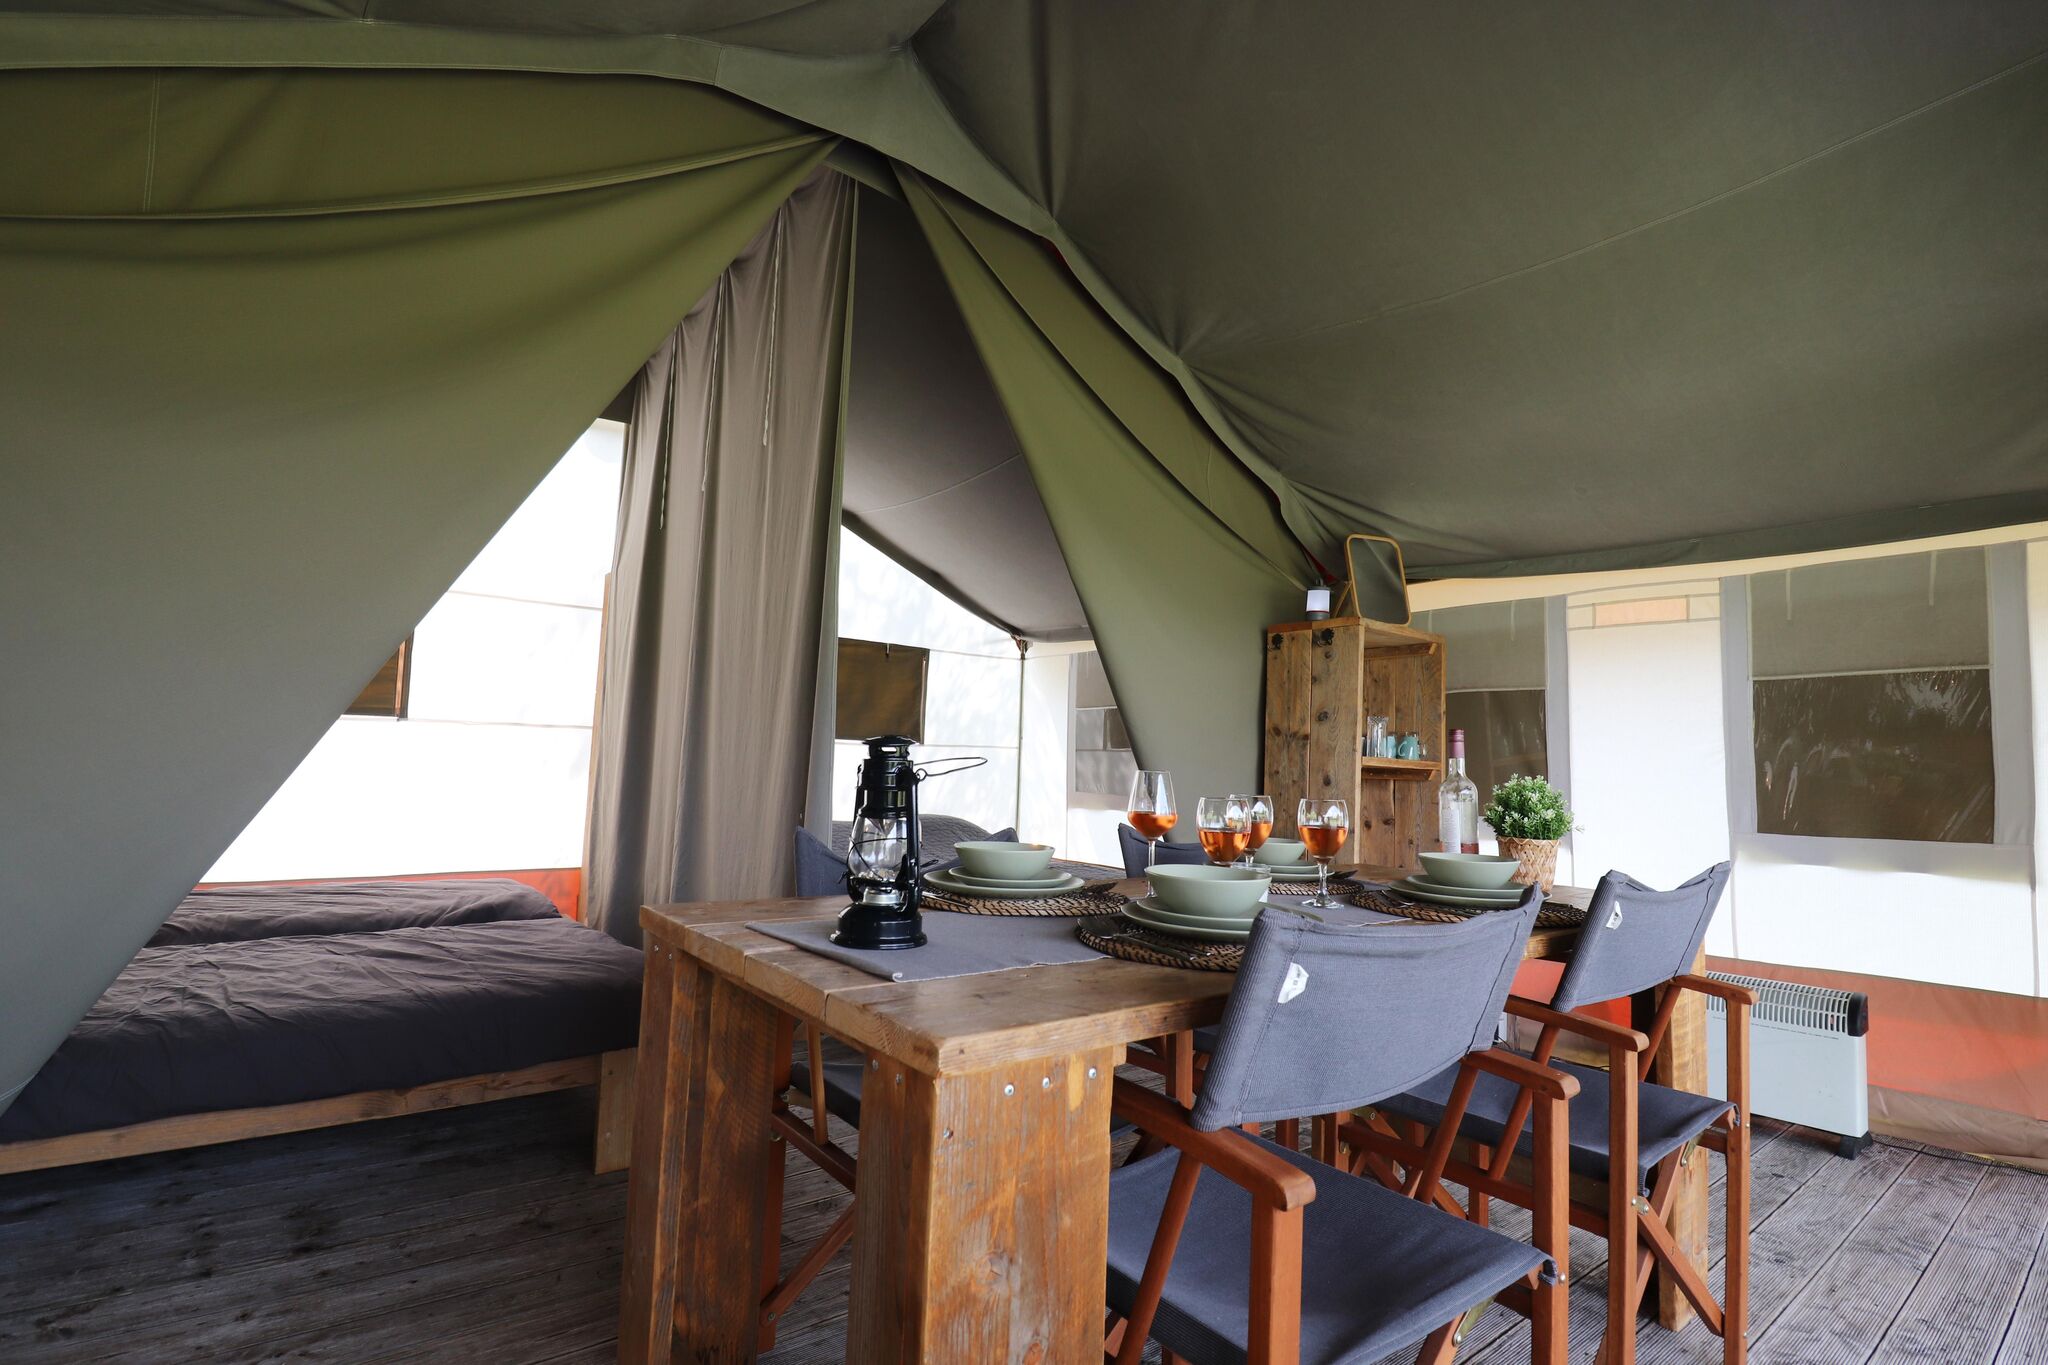 2 Luxury glamor safari tents next to eachother